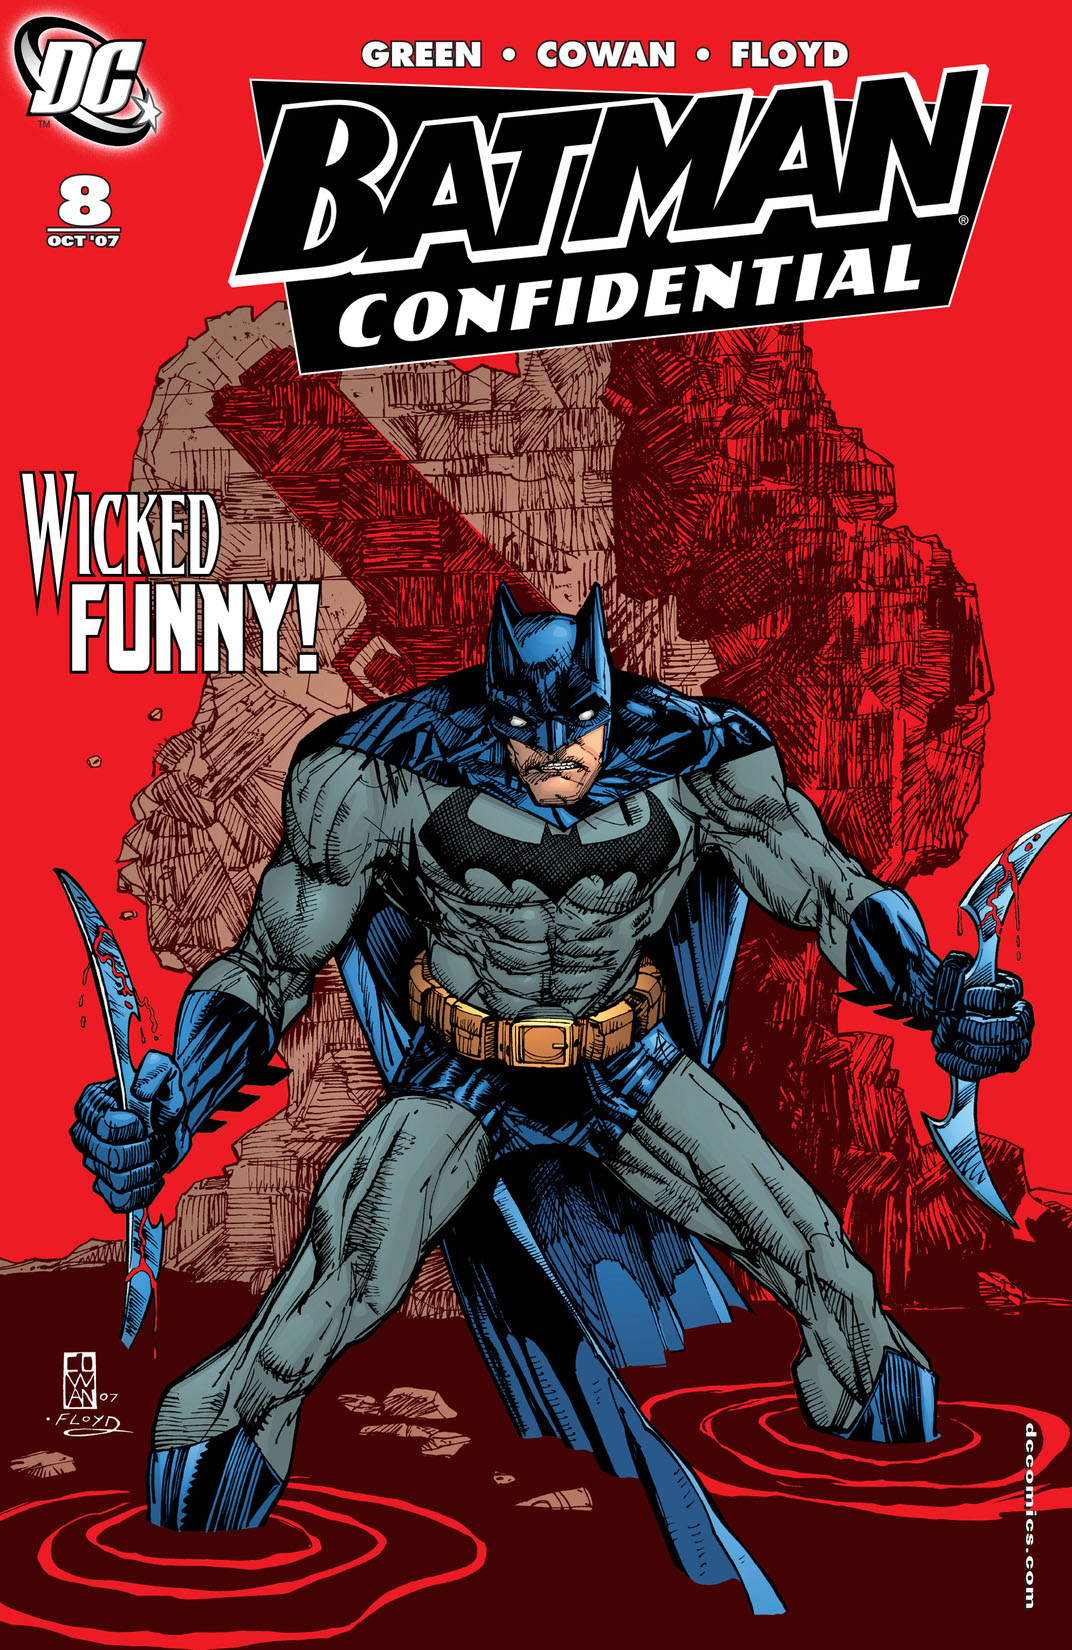 Batman Confidential #8 preview images